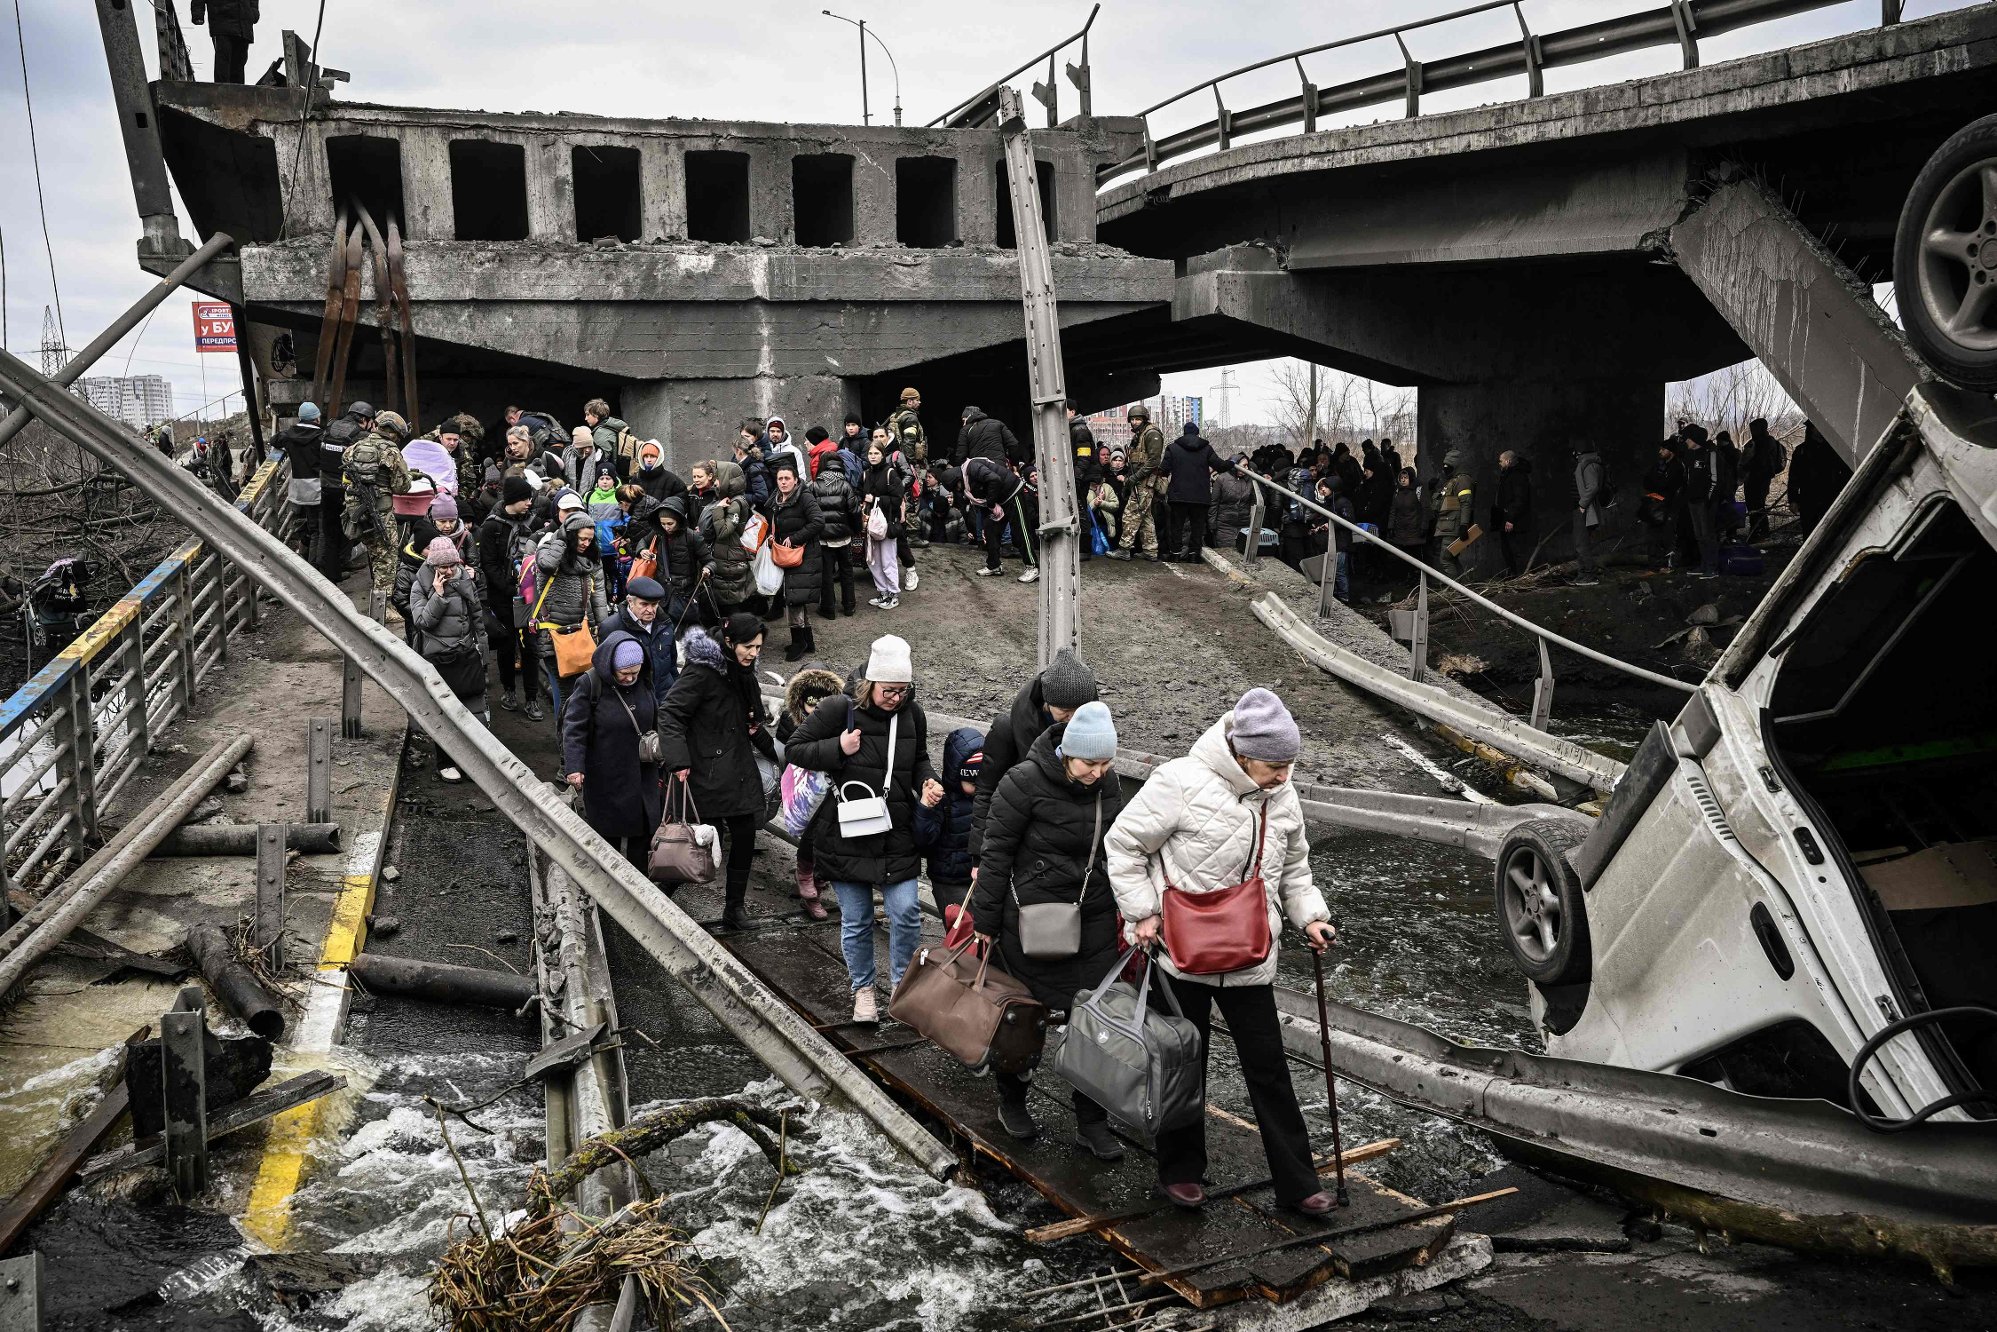 jens stoltenberg om ukraina-krigen: – smertefullt å se lidelsene